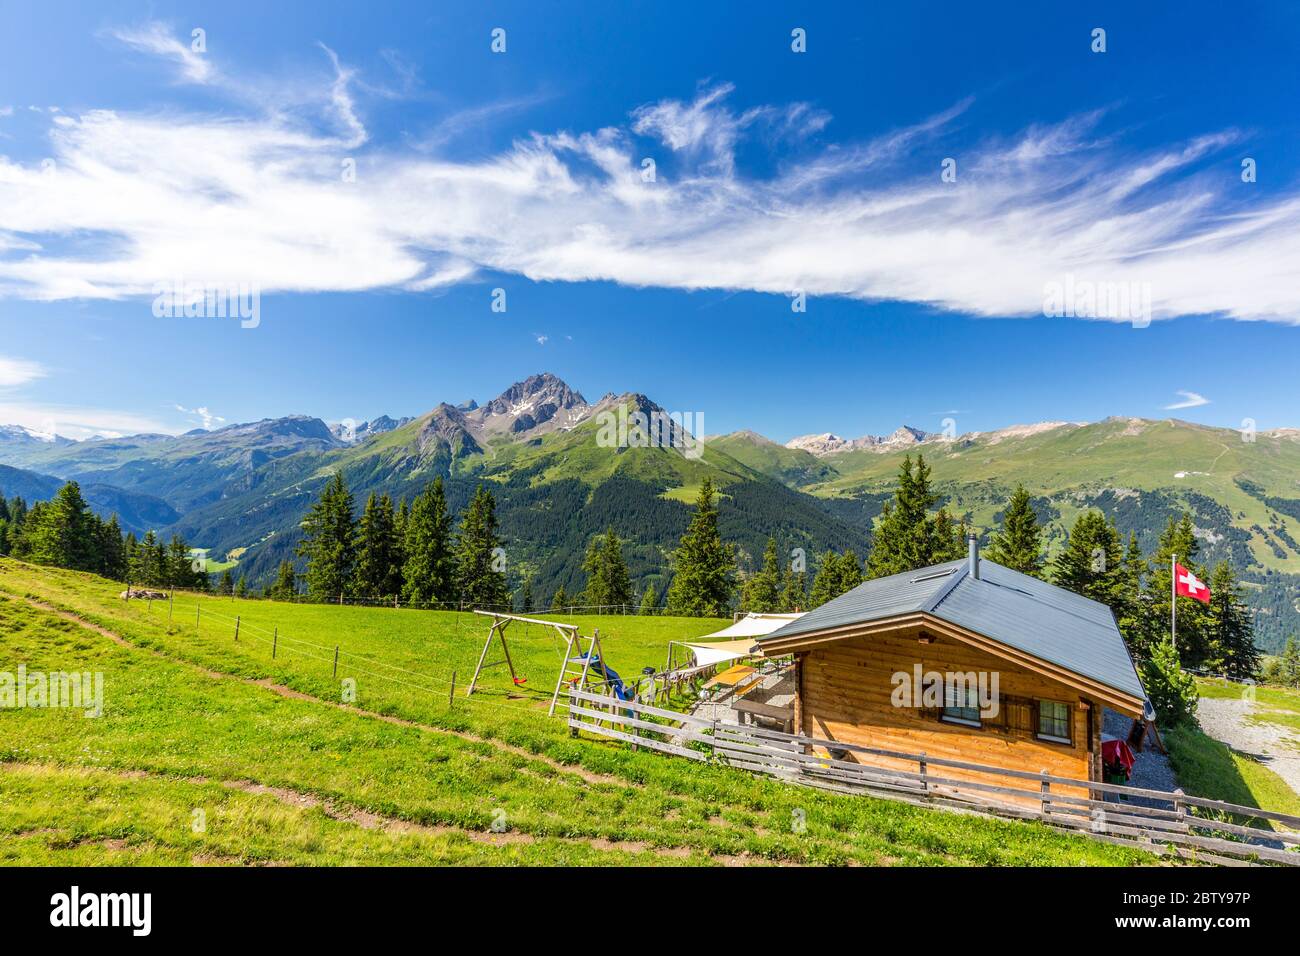 Cabane alpine avec drapeau suisse sous des nuages étonnants, Urses, Surselva, Graubunden, Suisse, Europe Banque D'Images